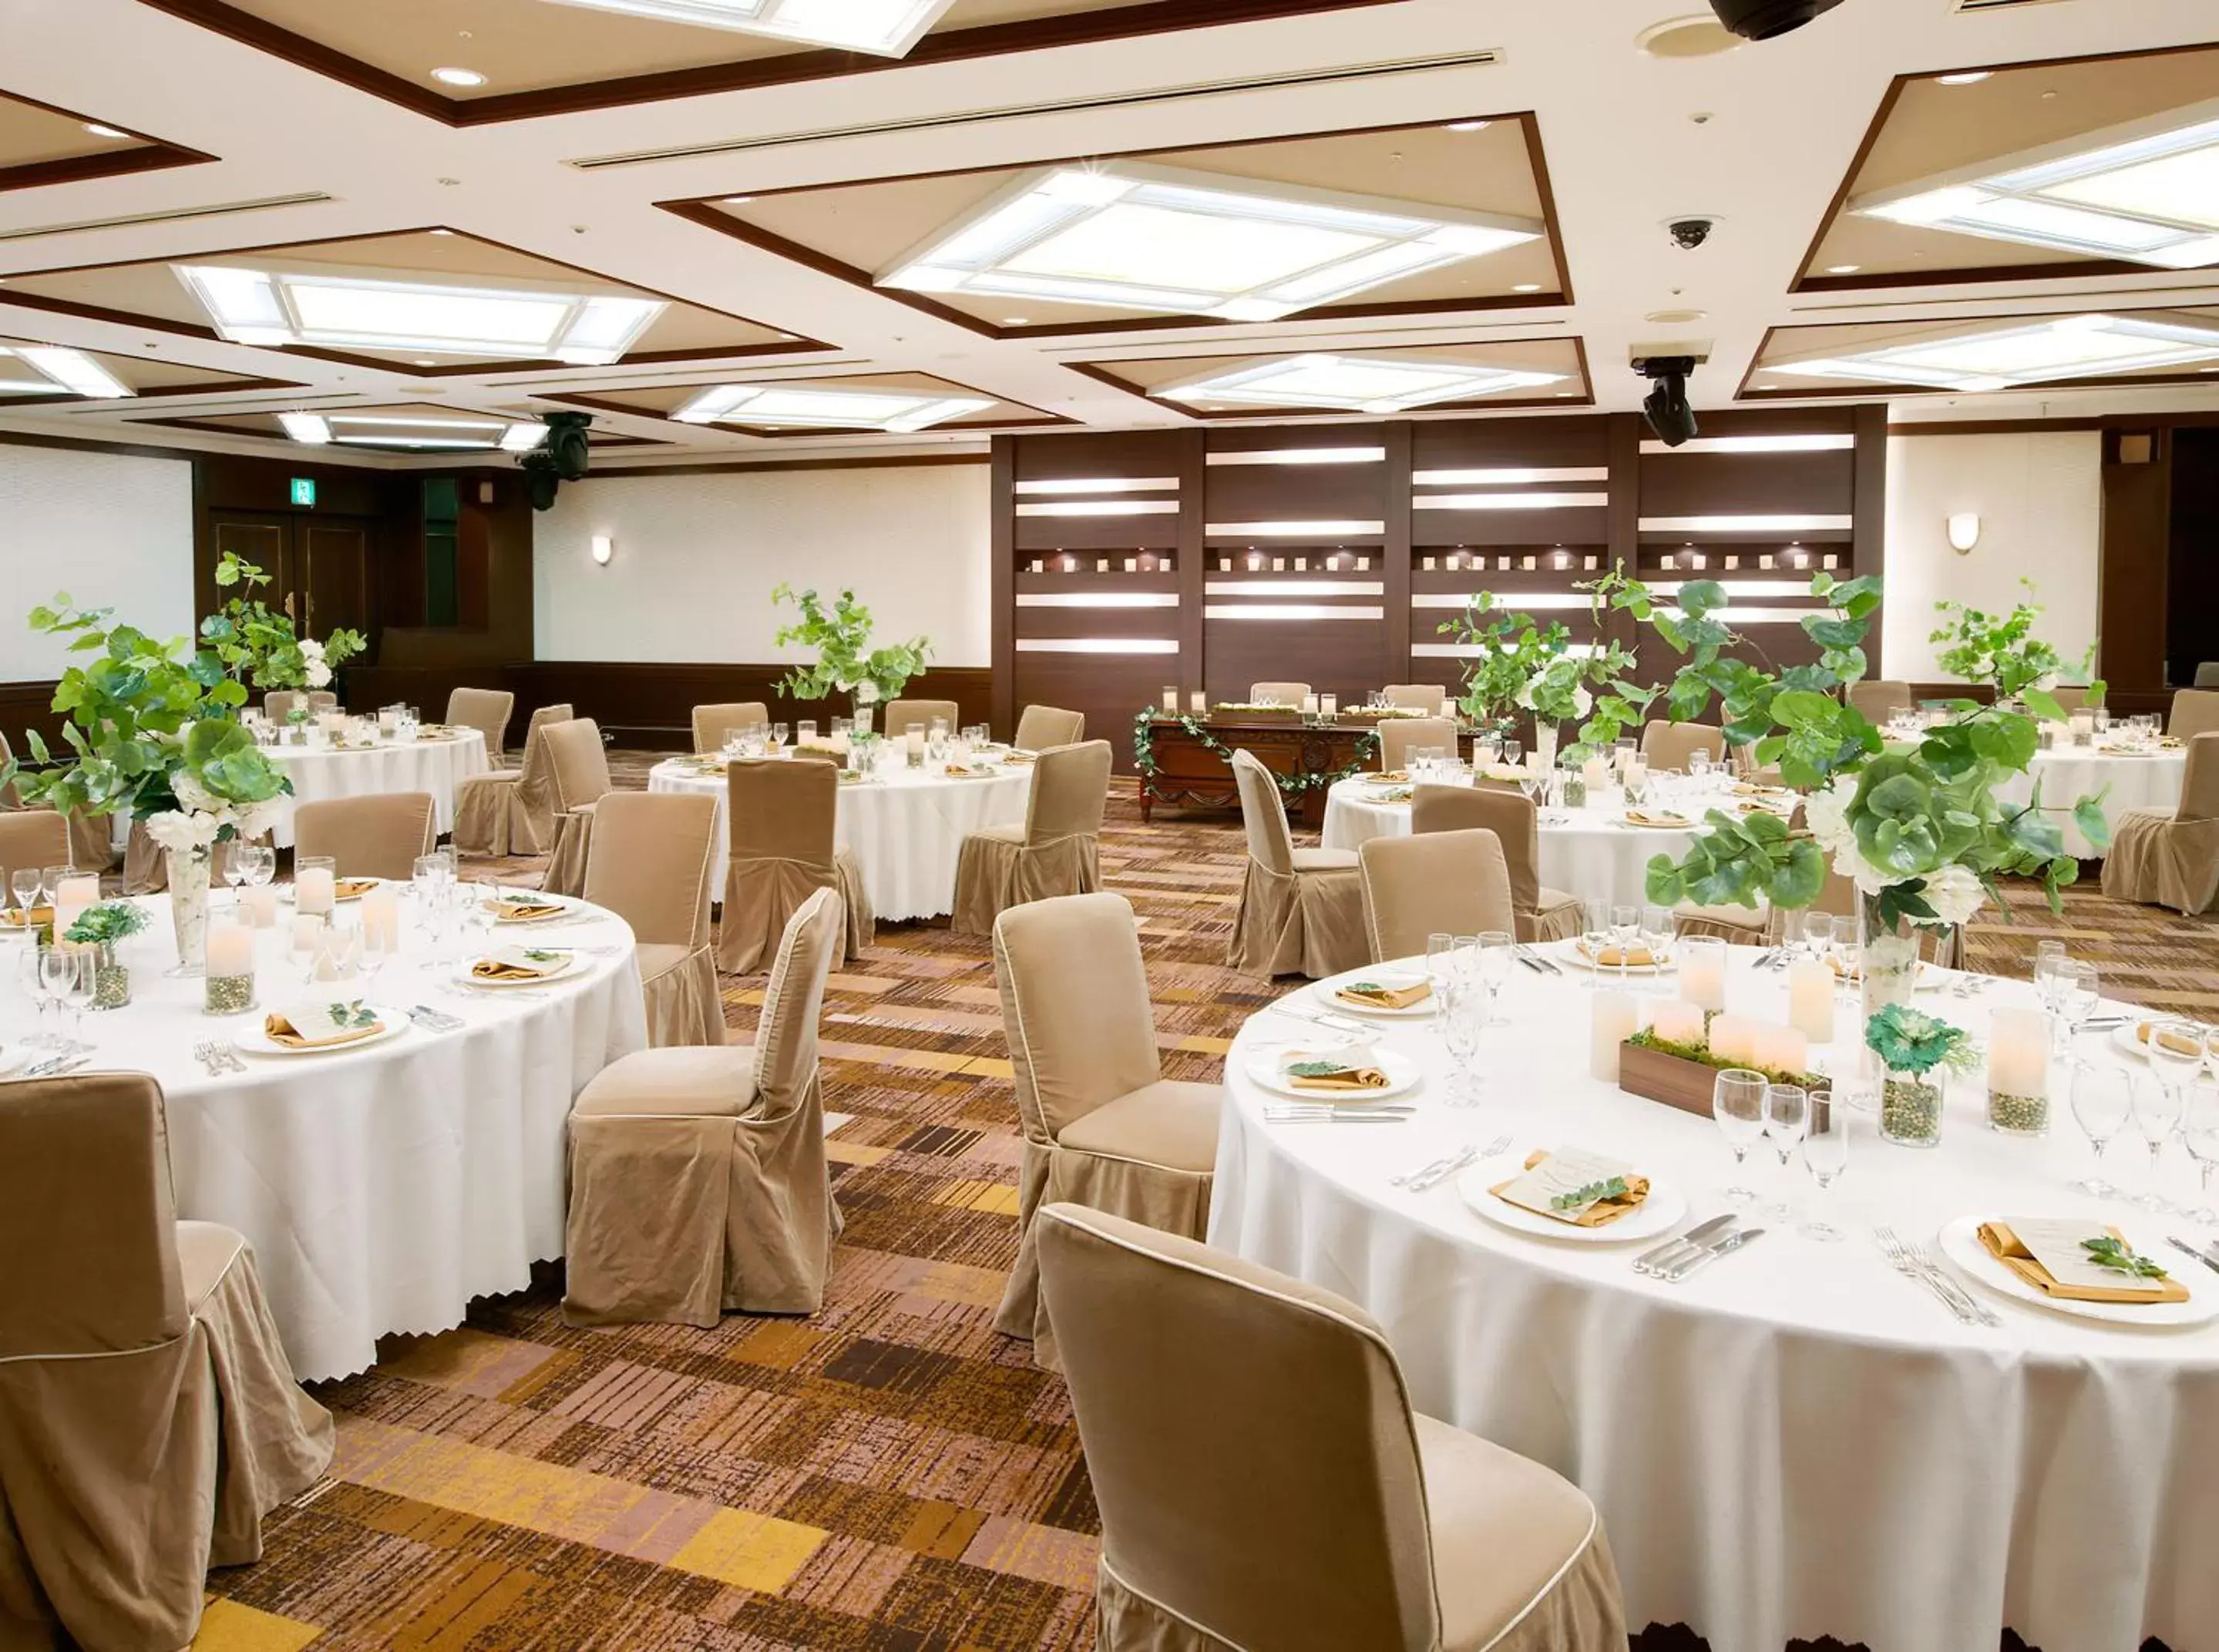 Banquet/Function facilities, Banquet Facilities in Tobu Hotel Levant Tokyo